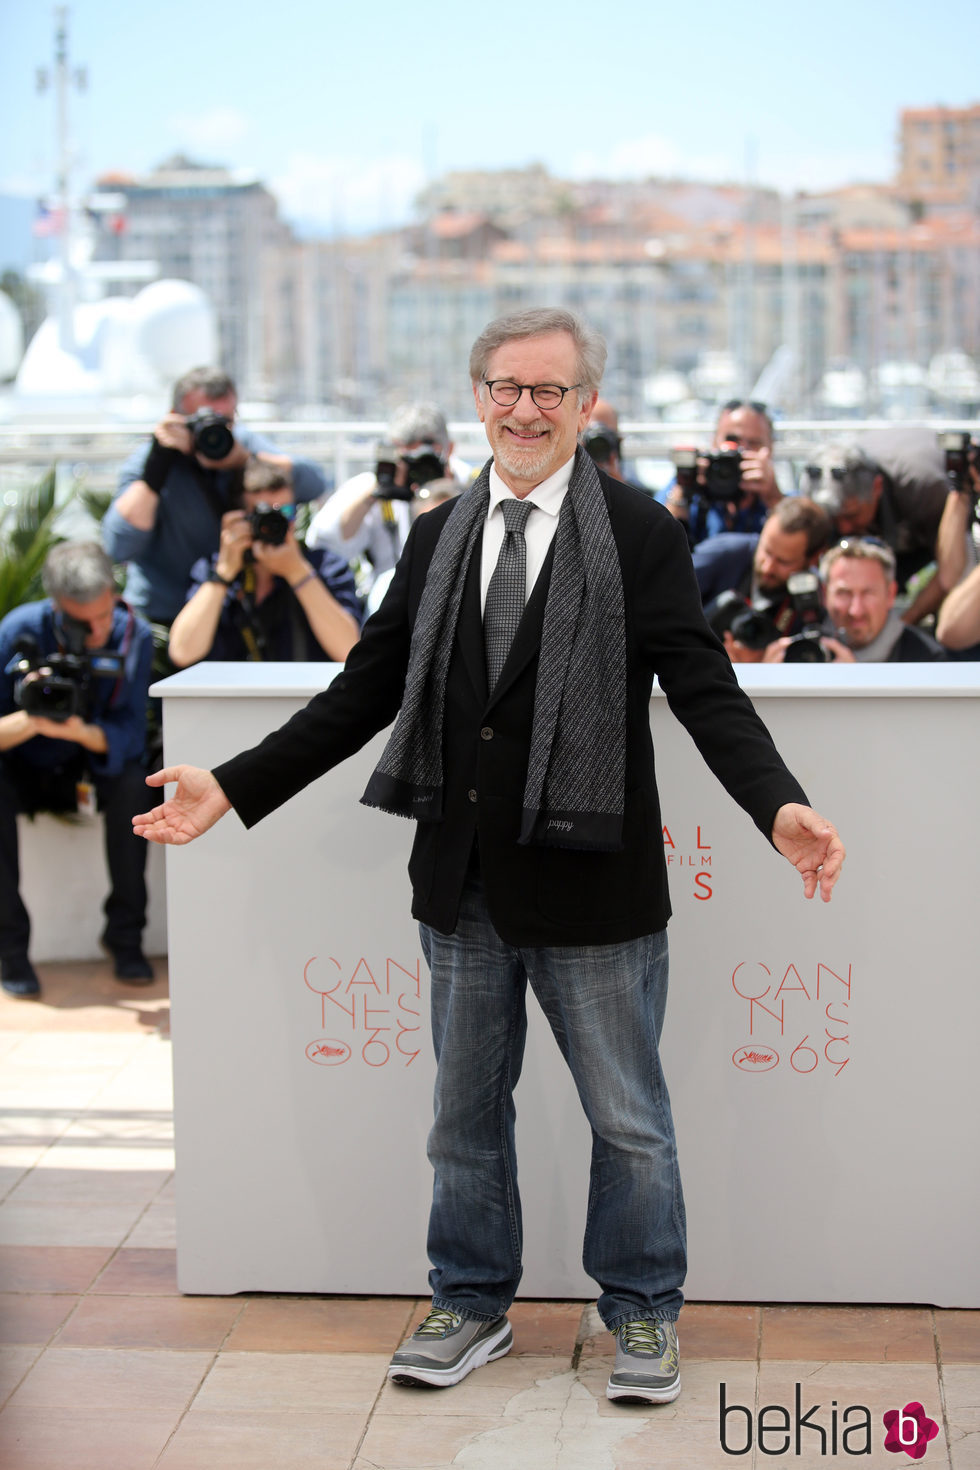 Steven Spielberg en el photocall de la película 'The BFG' en el festival de Cannes 2016